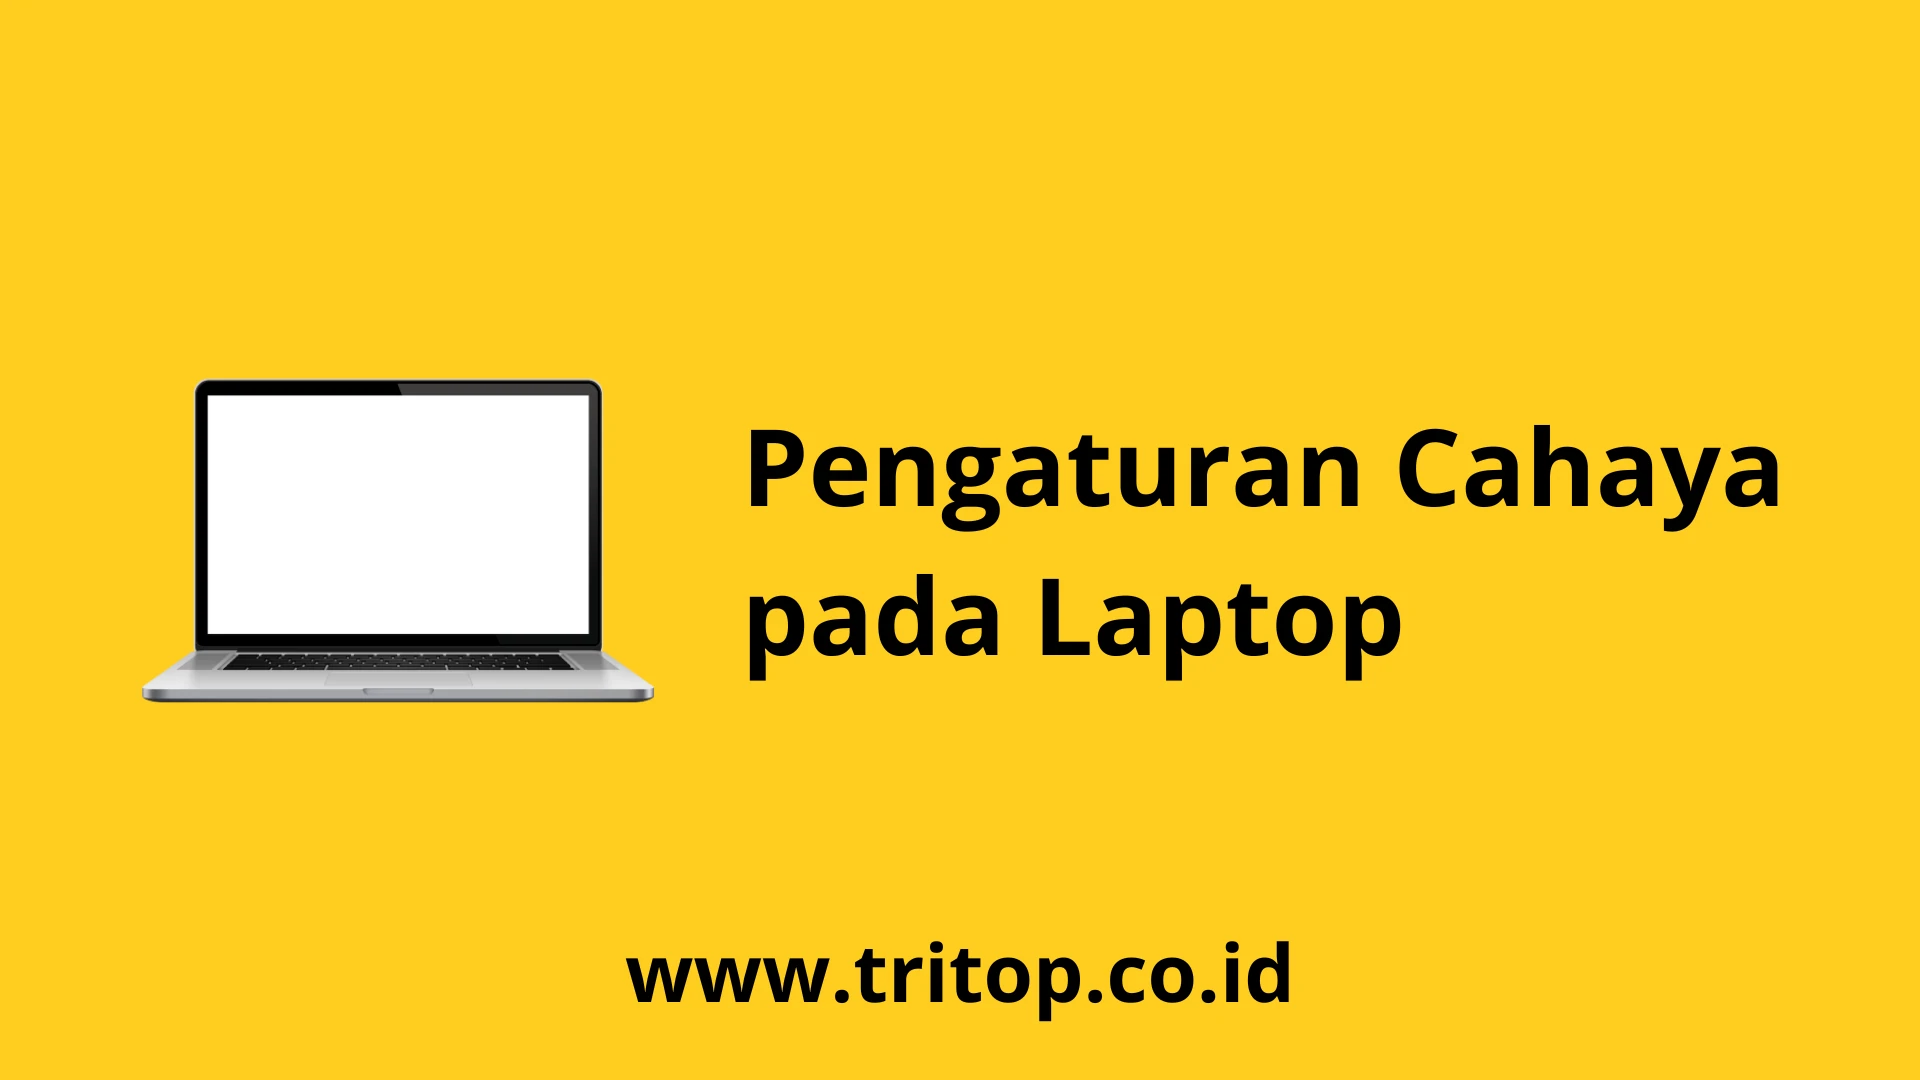 Pengaturan Cahaya Laptop Tritop.co.id